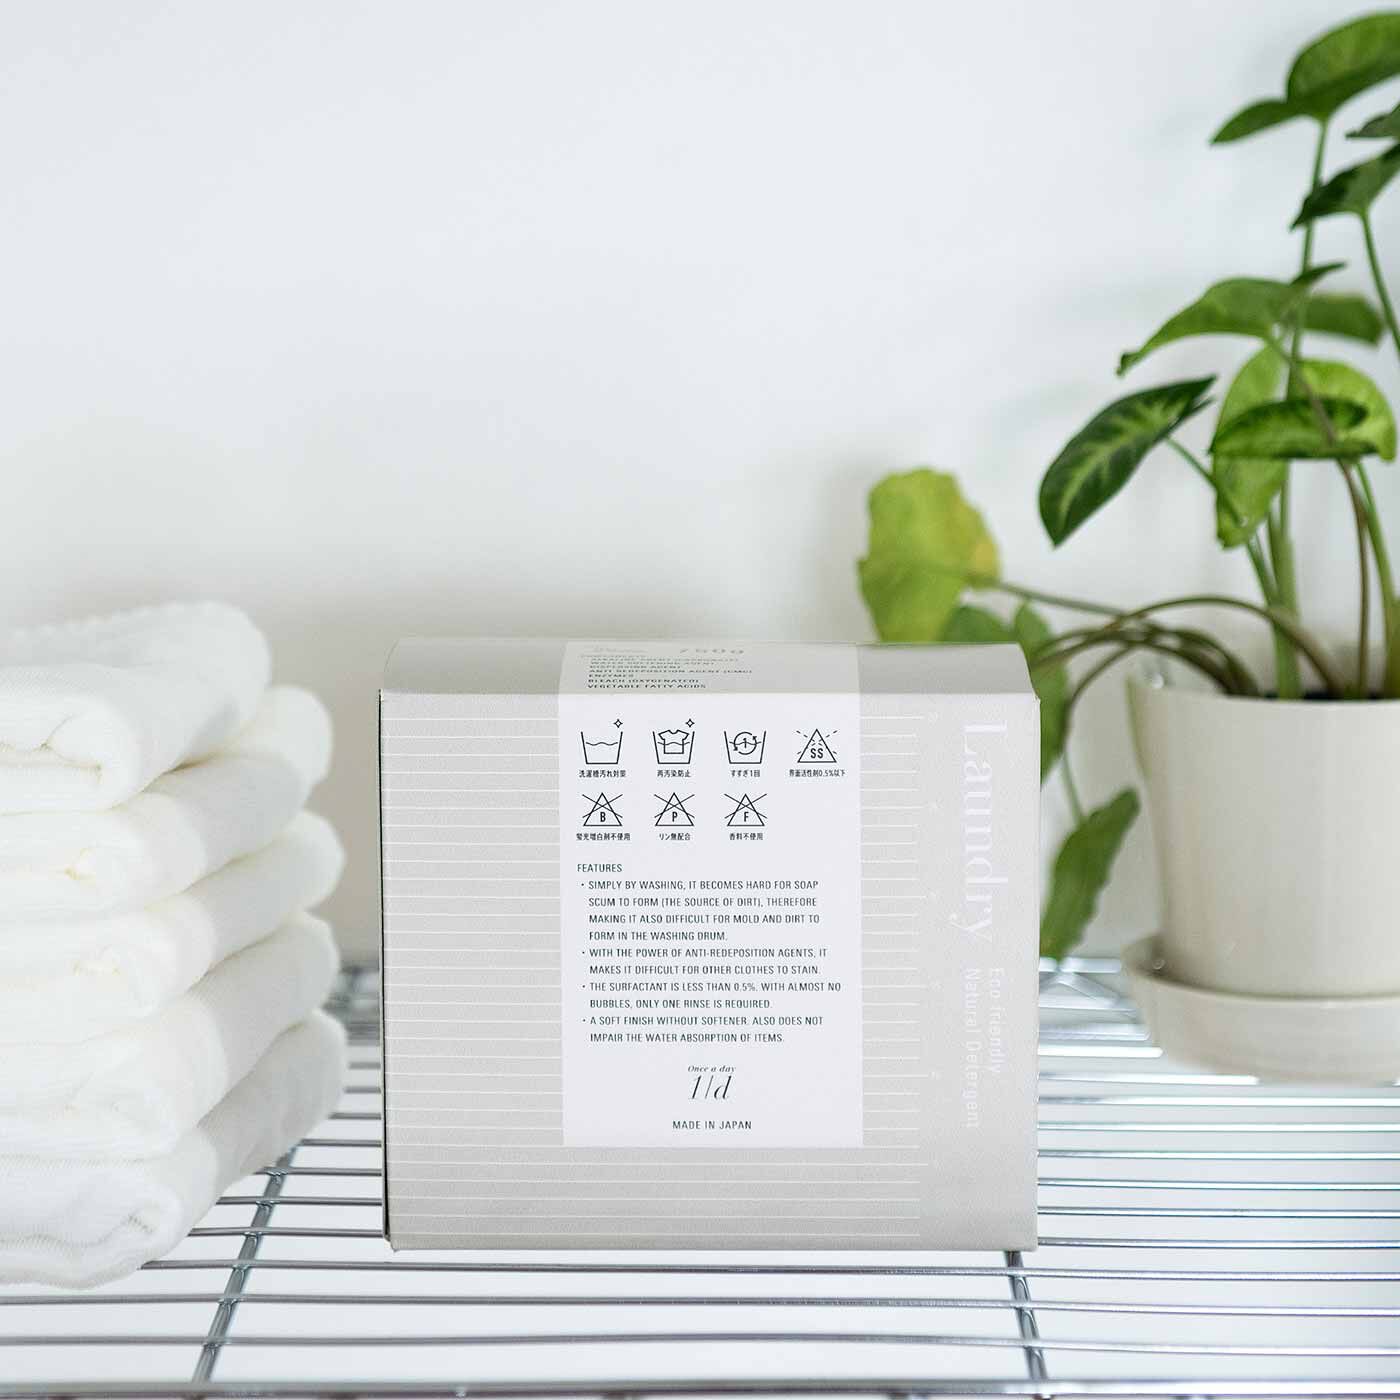 フェリシモの雑貨Kraso|1/d for Laundry 洗濯洗剤の会|インテリアになじむパッケージデザイン。